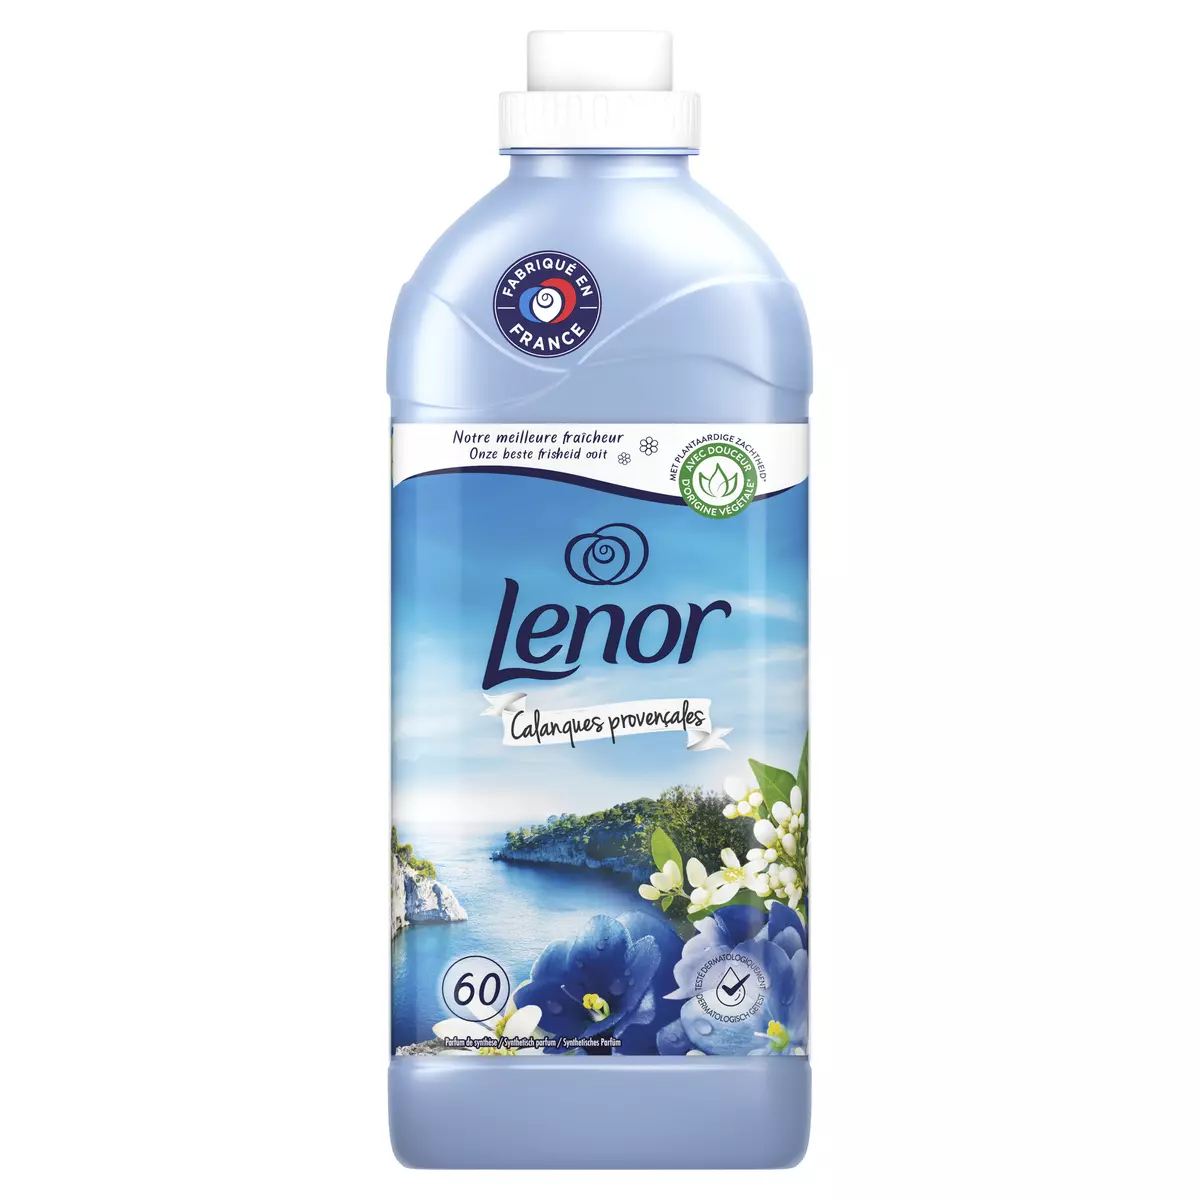 LENOR Adoucissant liquide Calanques provençale 60 lavages 1.38l